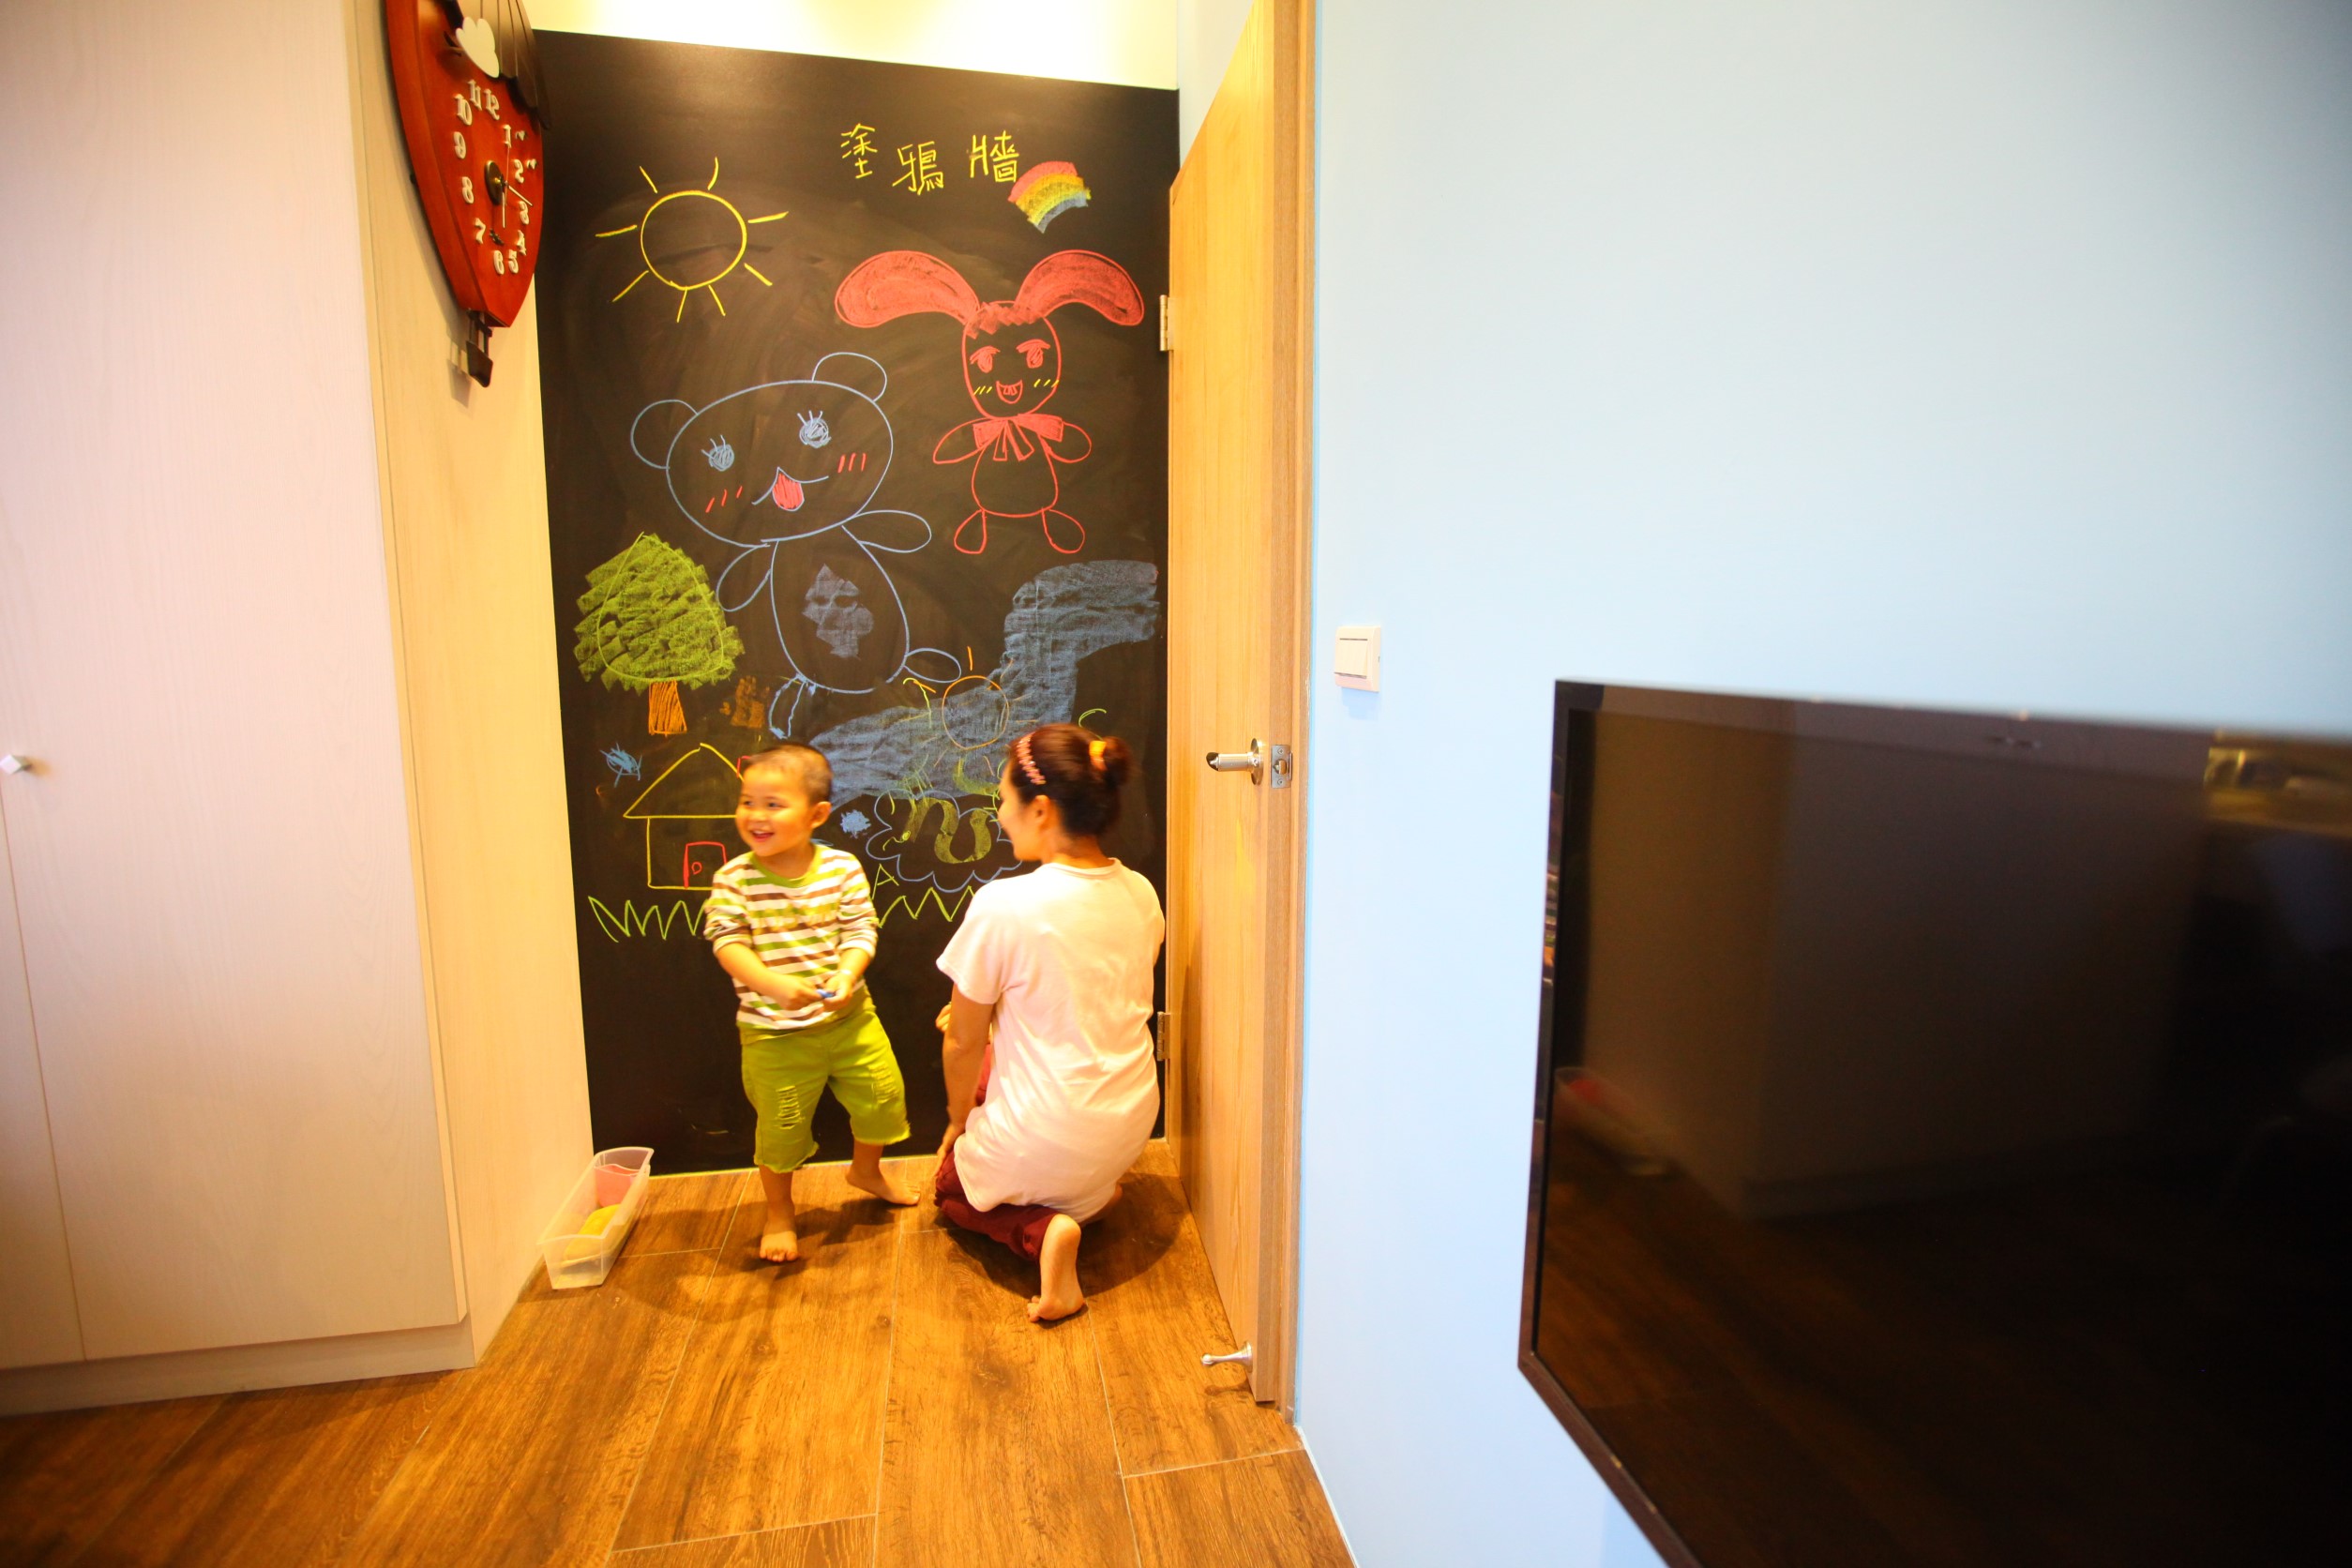 (意藍三人行)
有著大人小孩都喜愛的塗鴉牆，可以抒發入住者的心聲或給阿里阿里的留言建議，也是小朋友不吵鬧父母的最佳畫板